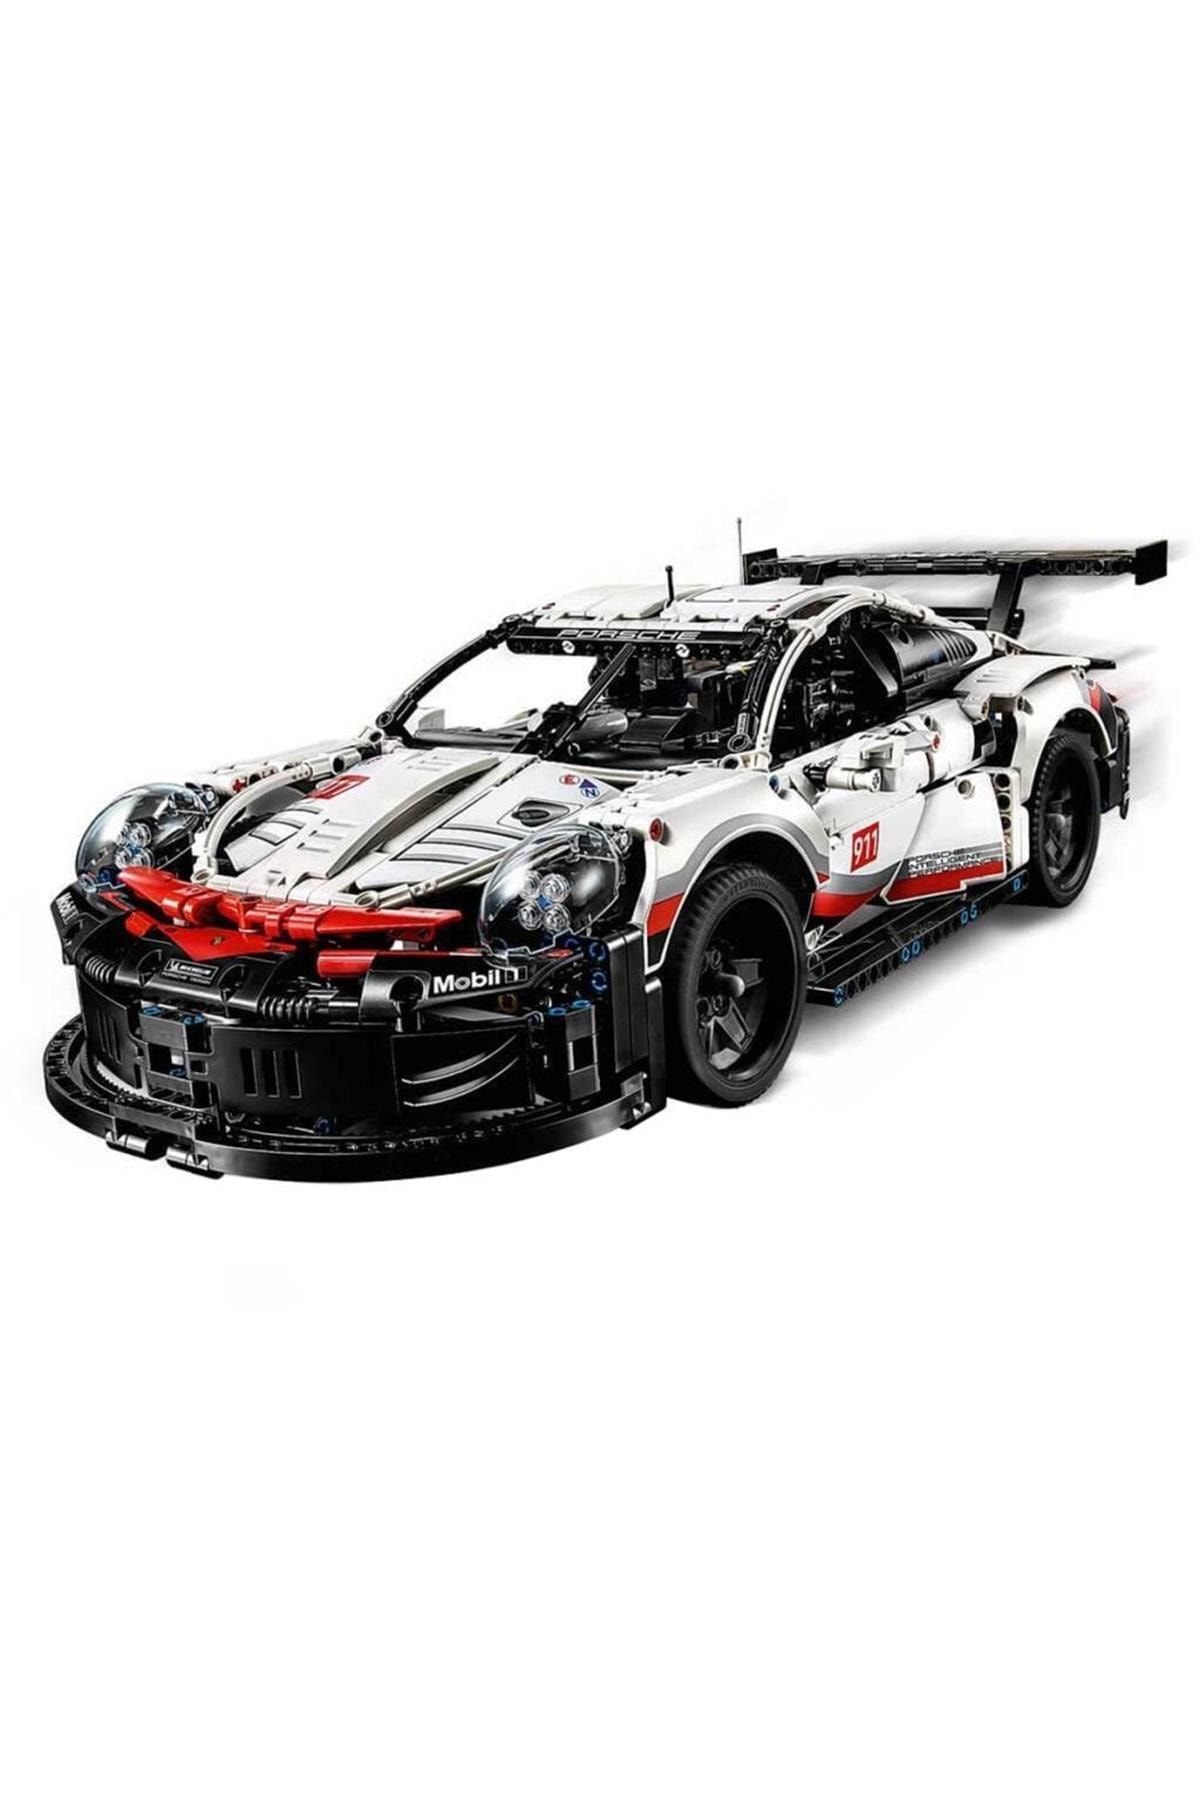 LEGO Technic Porsche 911 Rsr 42096